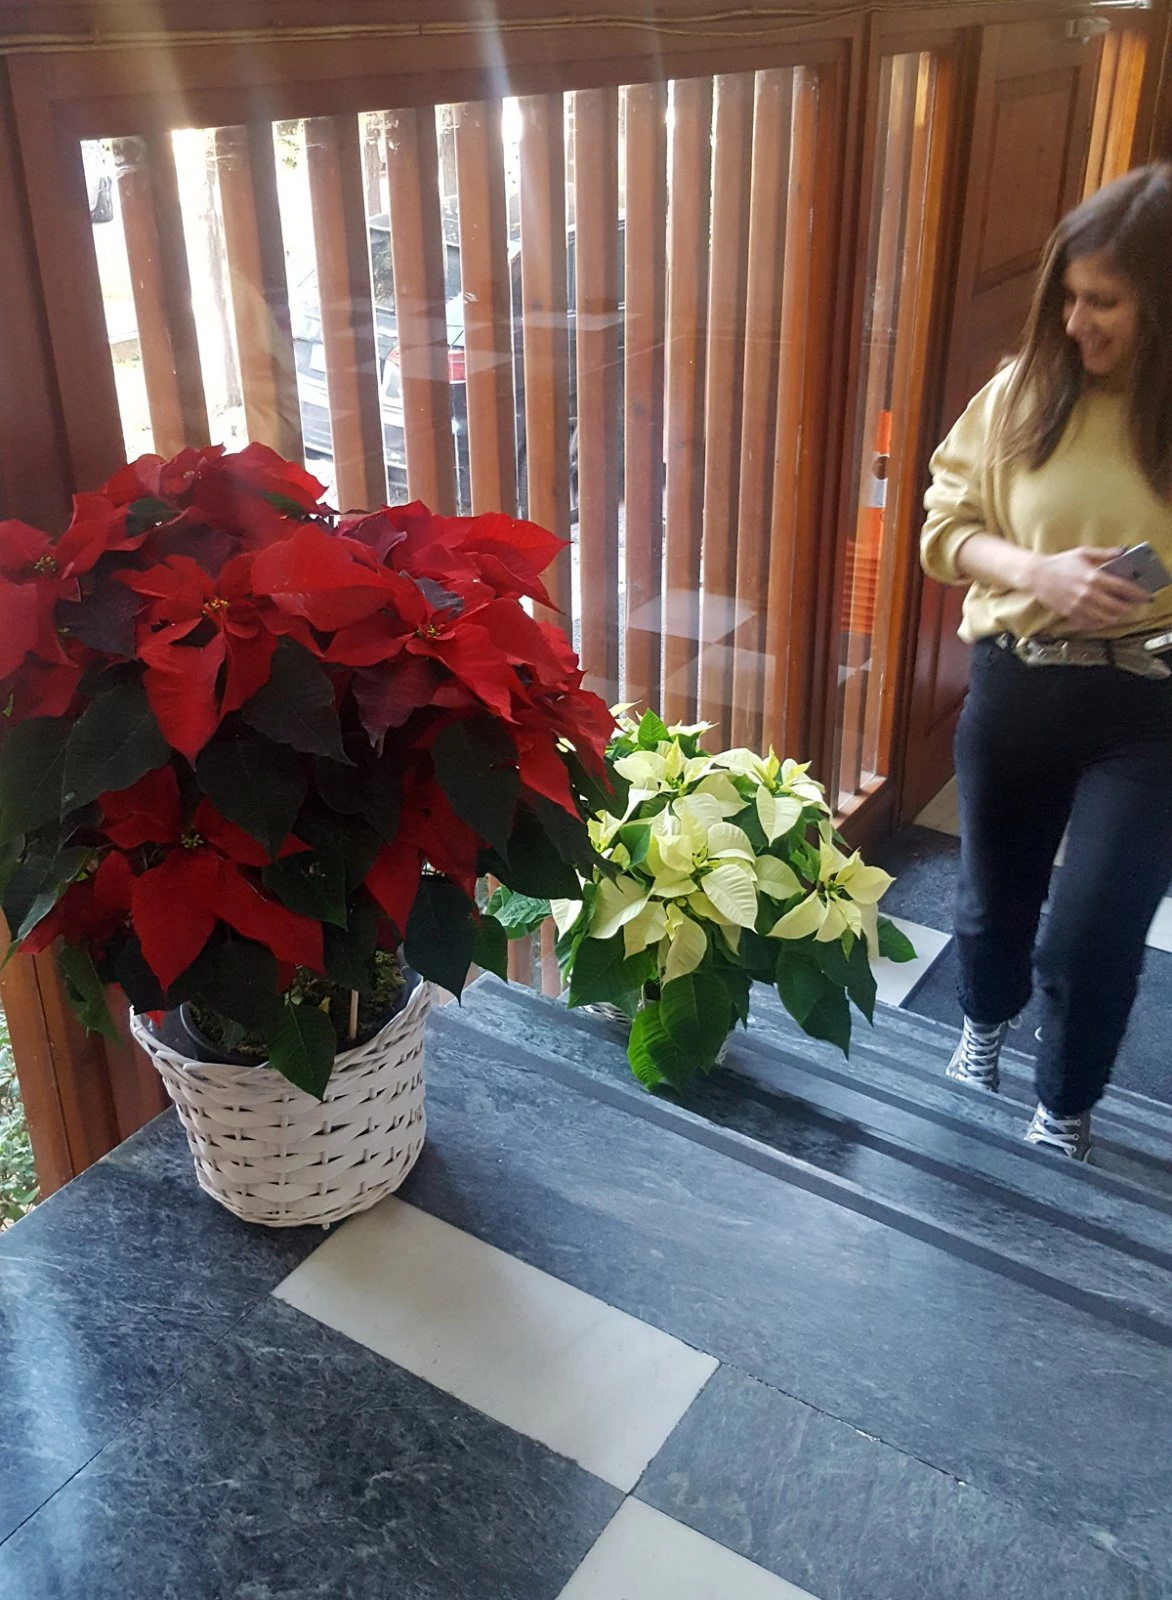 Αλεξανδρινό | 3 εύκολες ιδέες για διακόσμηση με πρωταγωνιστή το λουλούδι των Χριστουγέννων! - εικόνα 2